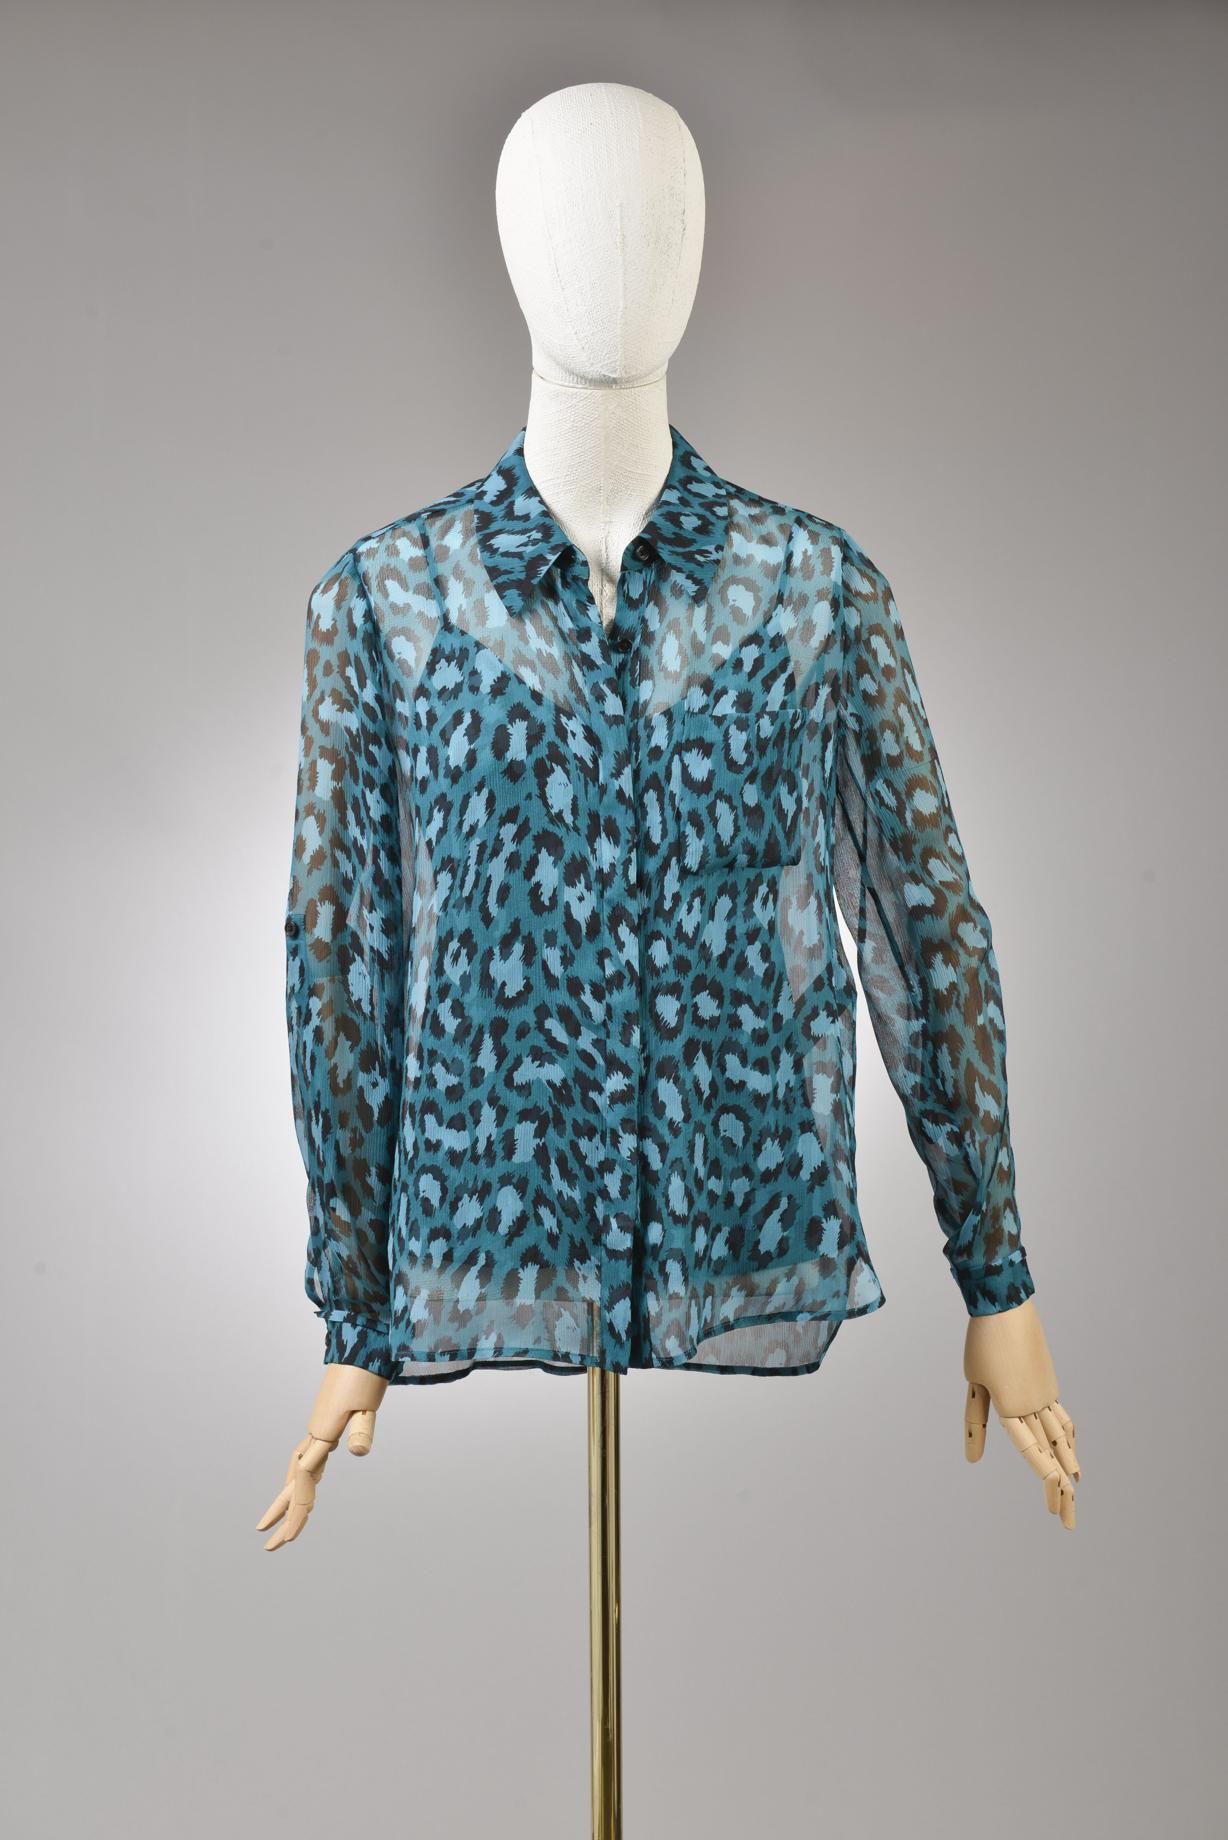 Null *尺寸XS DVF - Diane Von Fürstenberg

套装包括。

-丝质雪纺衫，型号为 "DVF Lorelei Two"，绿松石蓝&hellip;